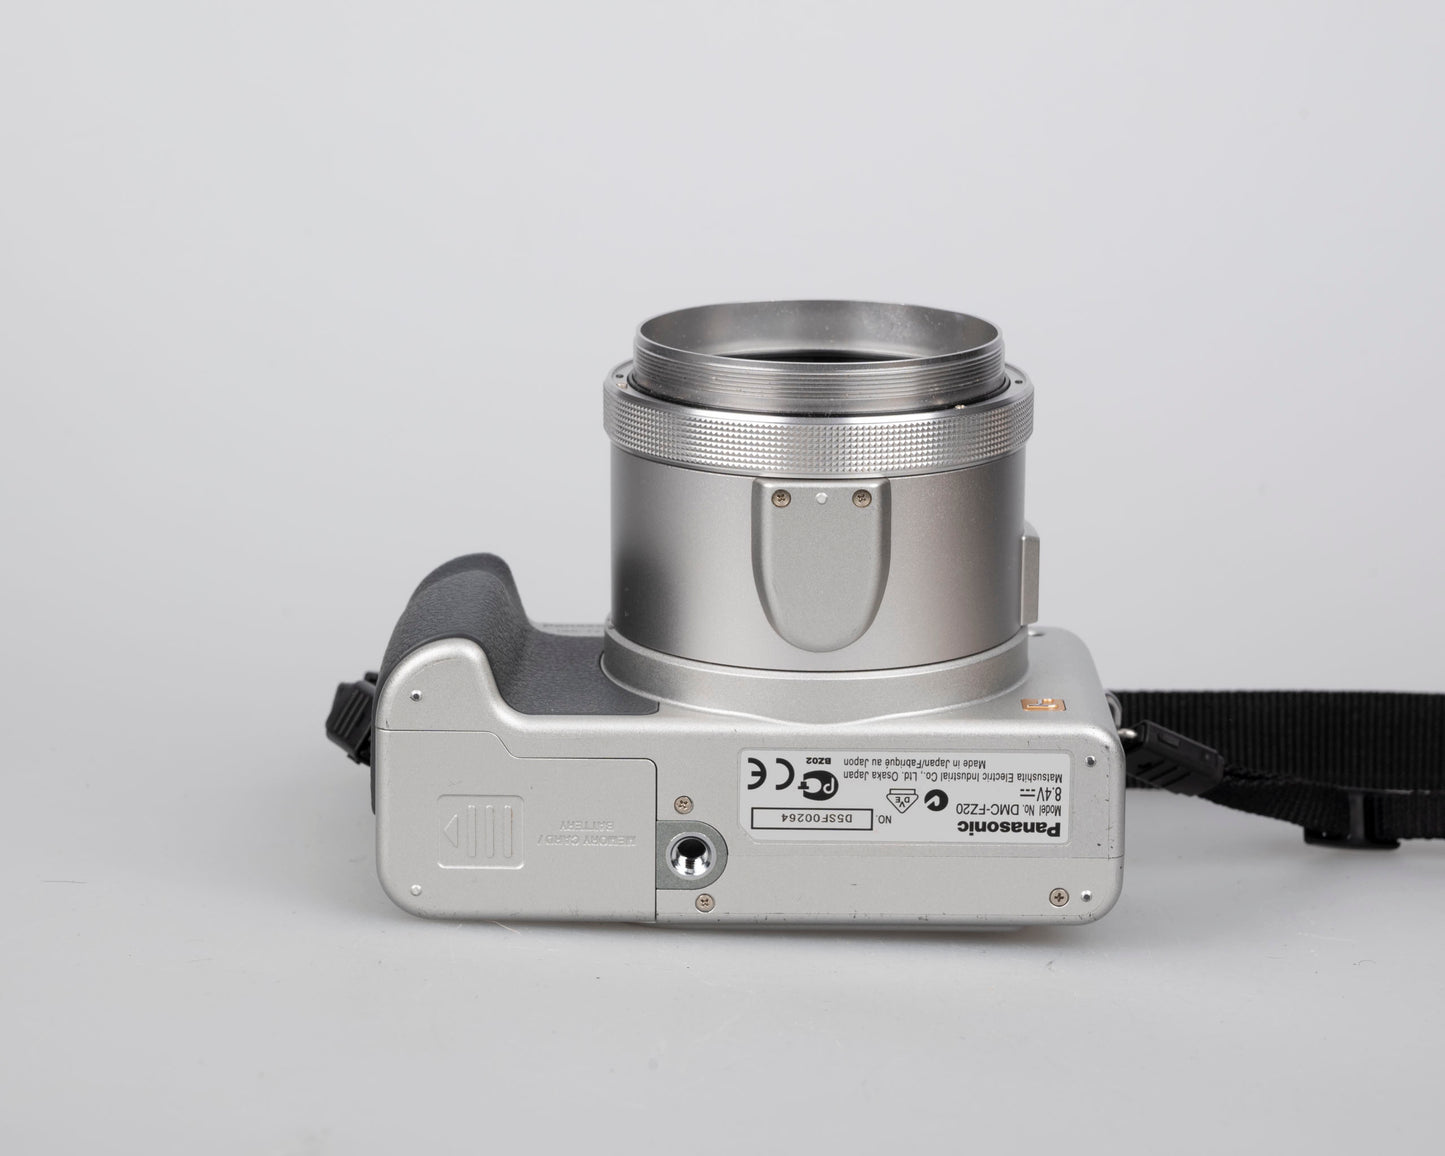 Appareil photo numérique Panasonic Lumix DMC-FZ20 avec capteur CCD 5 MP + objectif Leica DC Vario-Elmarit 1:2.8/6-72 ASPH avec chargeur + batterie + carte SD 2 Go